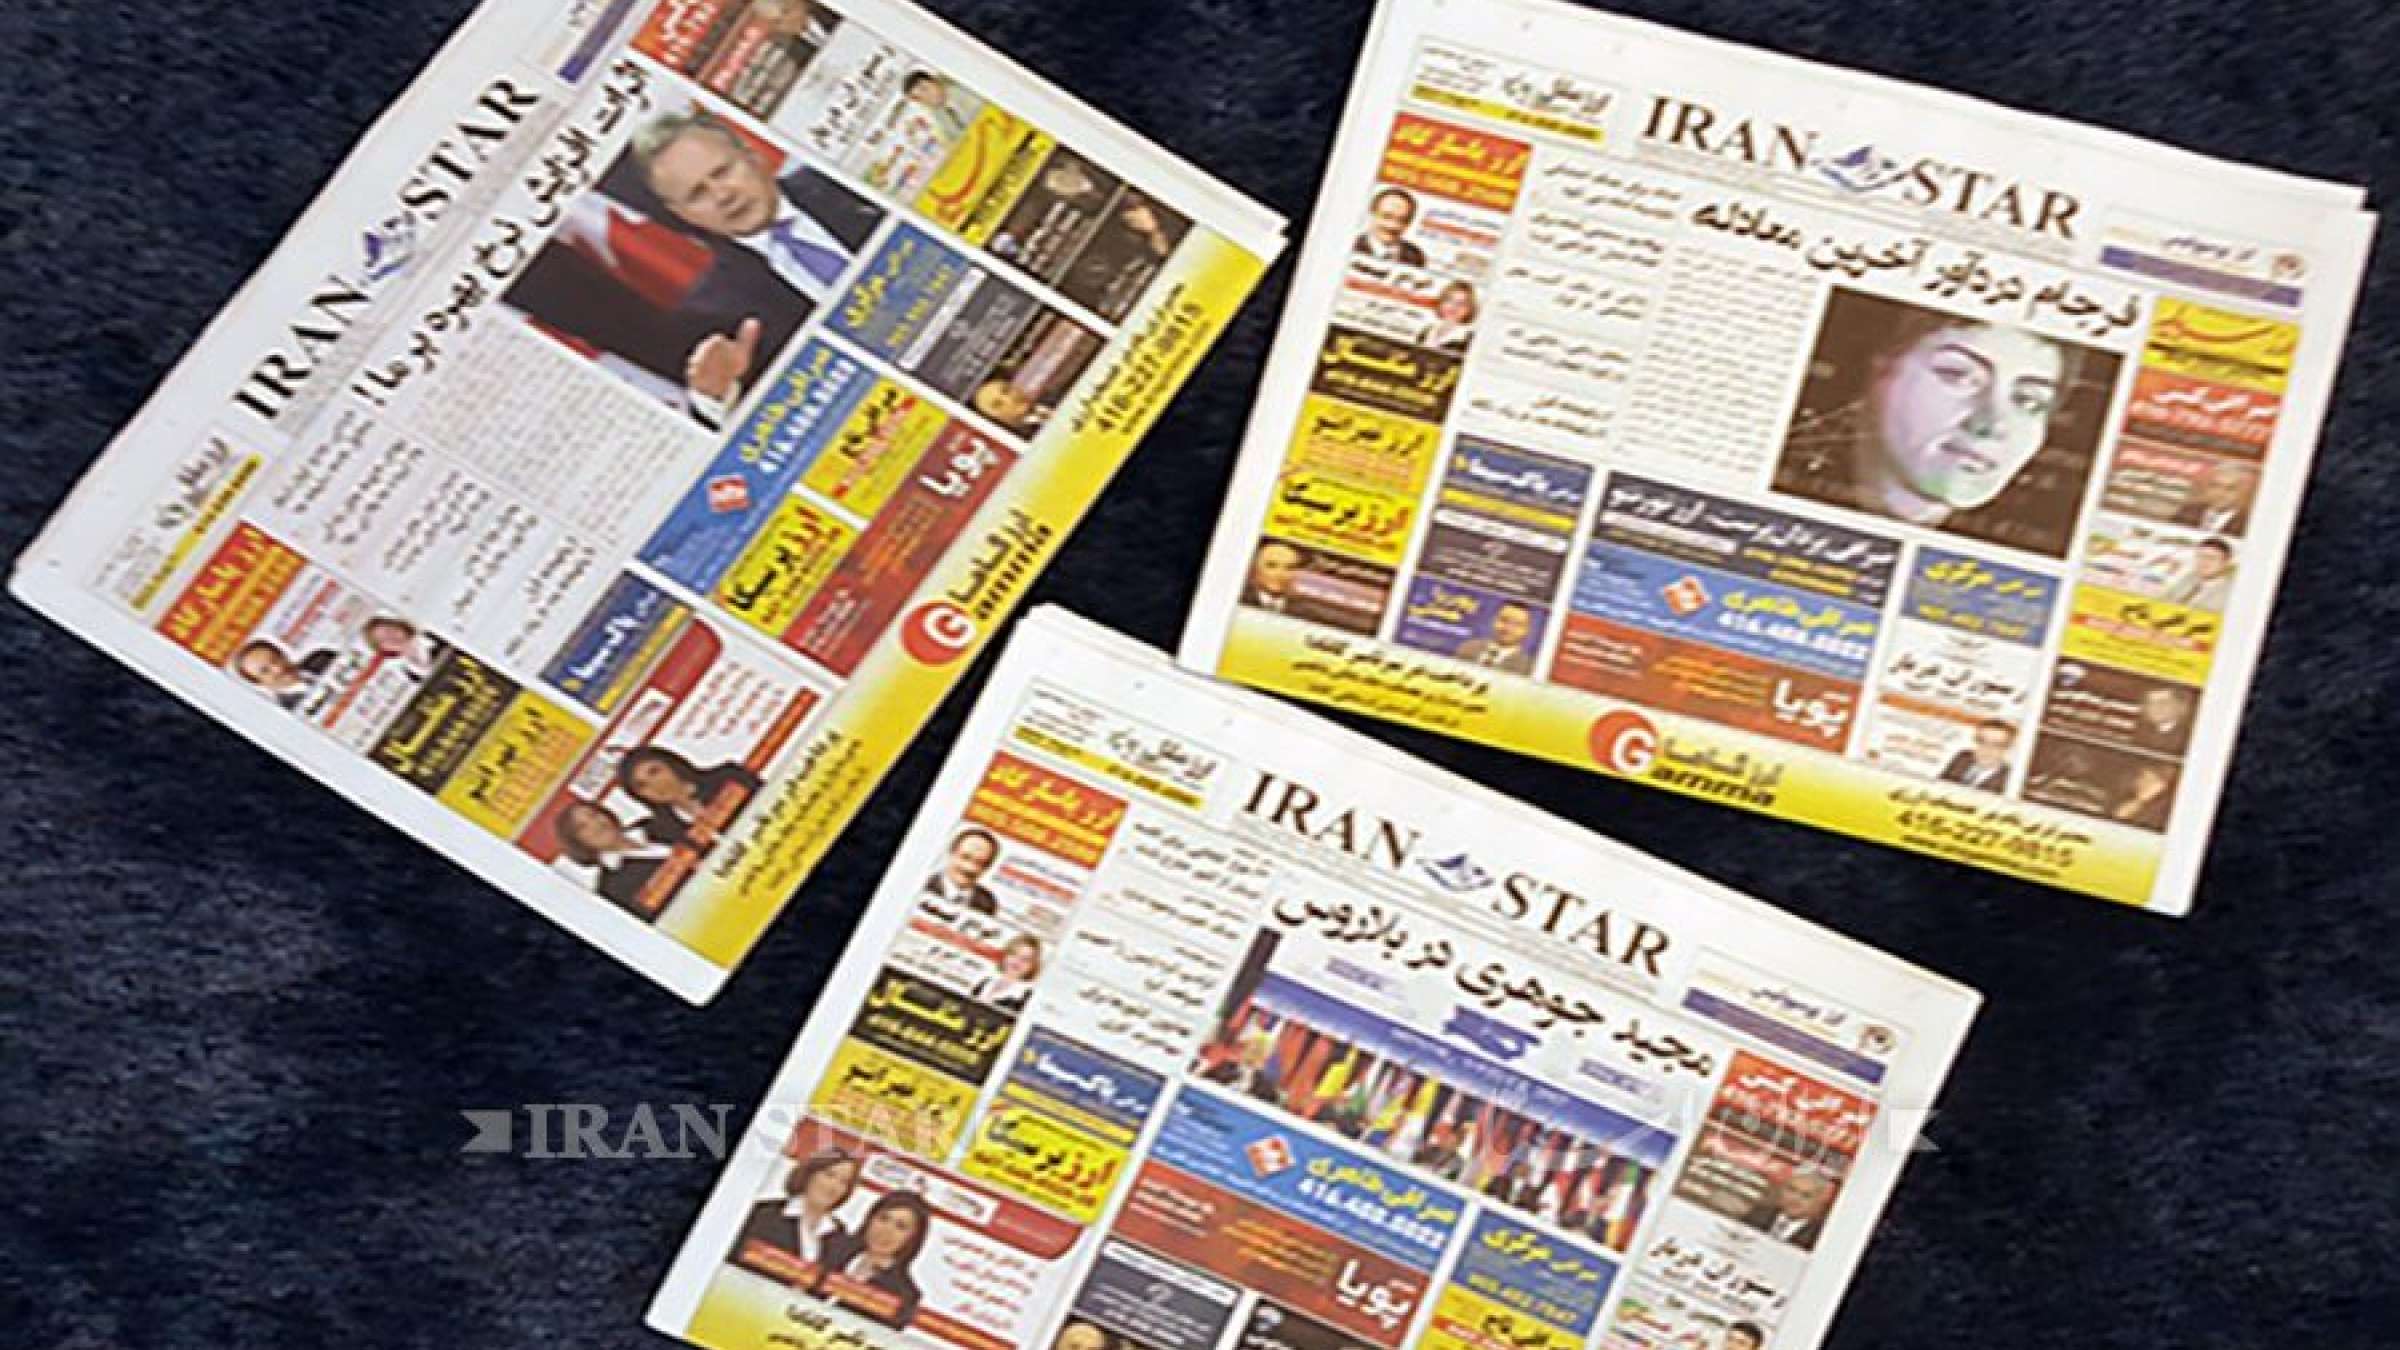 Iran Star best Iranian Persian media Marketing Newspaper online